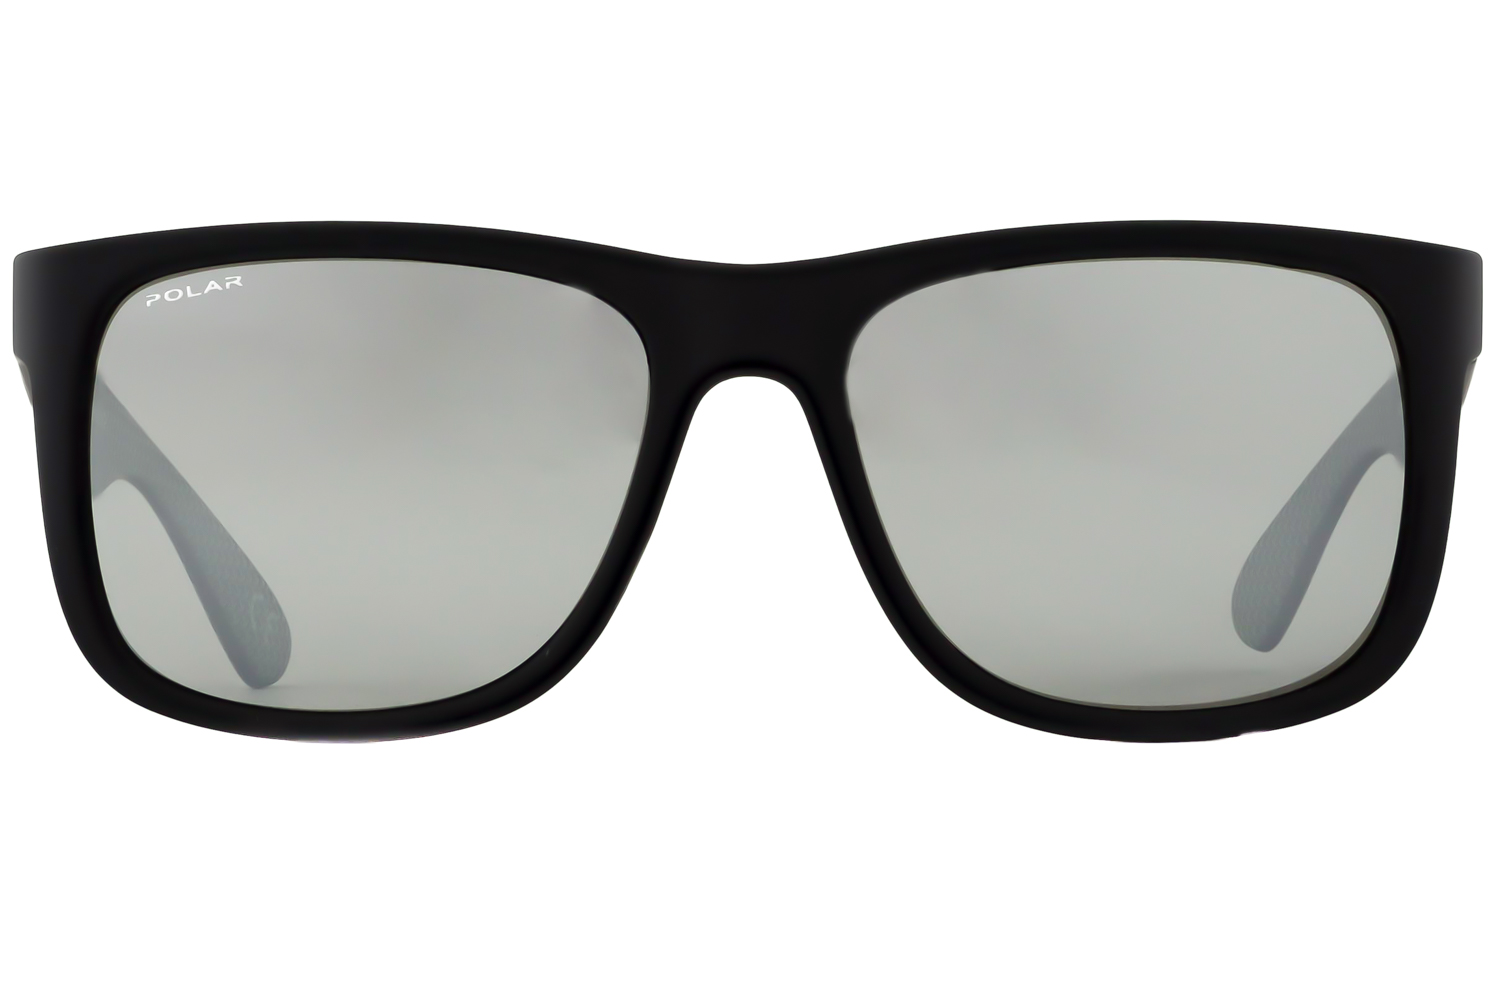 Polar 323 - Mens Prescription Sunglasses - Spec-Savers South Africa